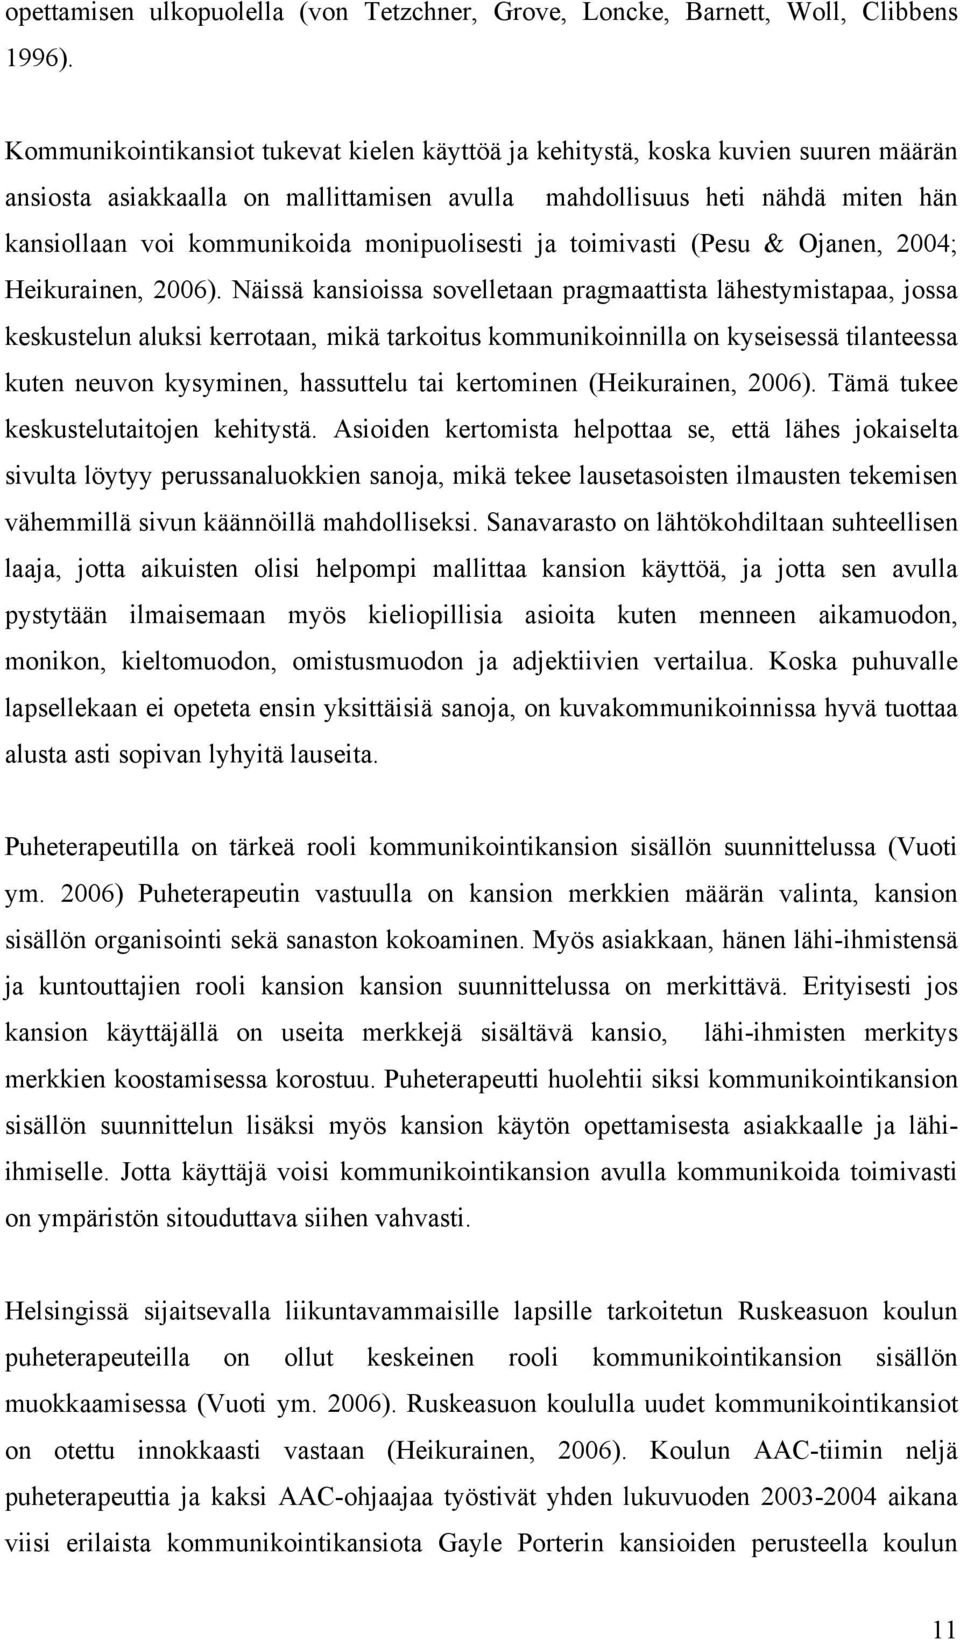 monipuolisesti ja toimivasti (Pesu & Ojanen, 2004; Heikurainen, 2006).